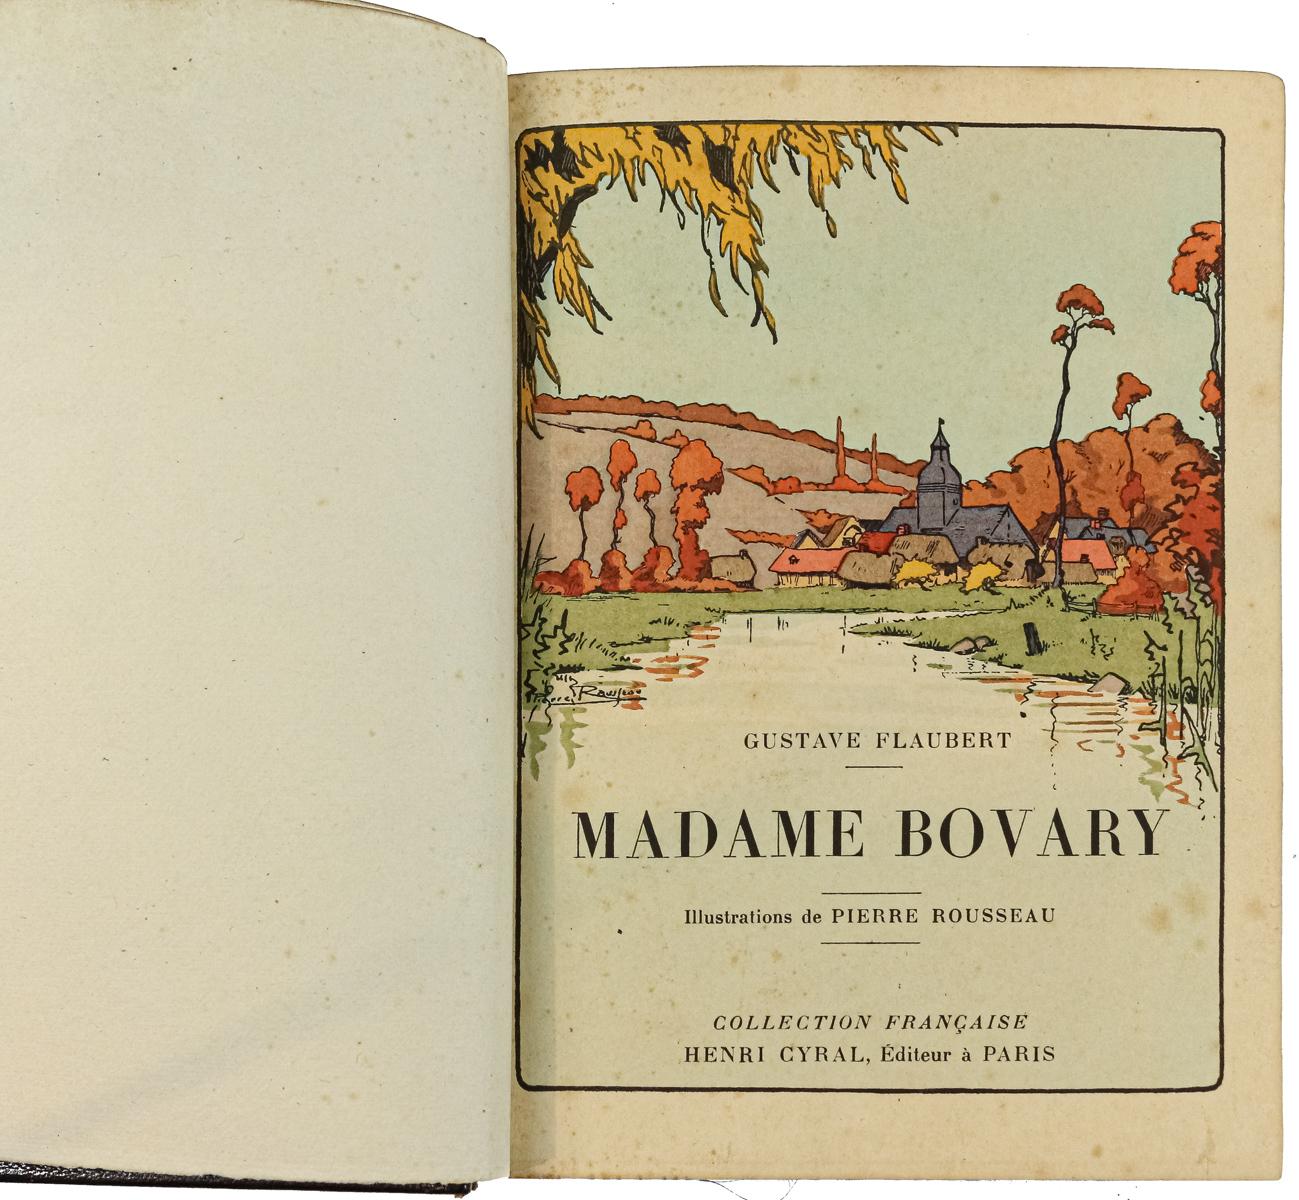 "MADAME BOVARY - MOEURS DE PROVINCE"